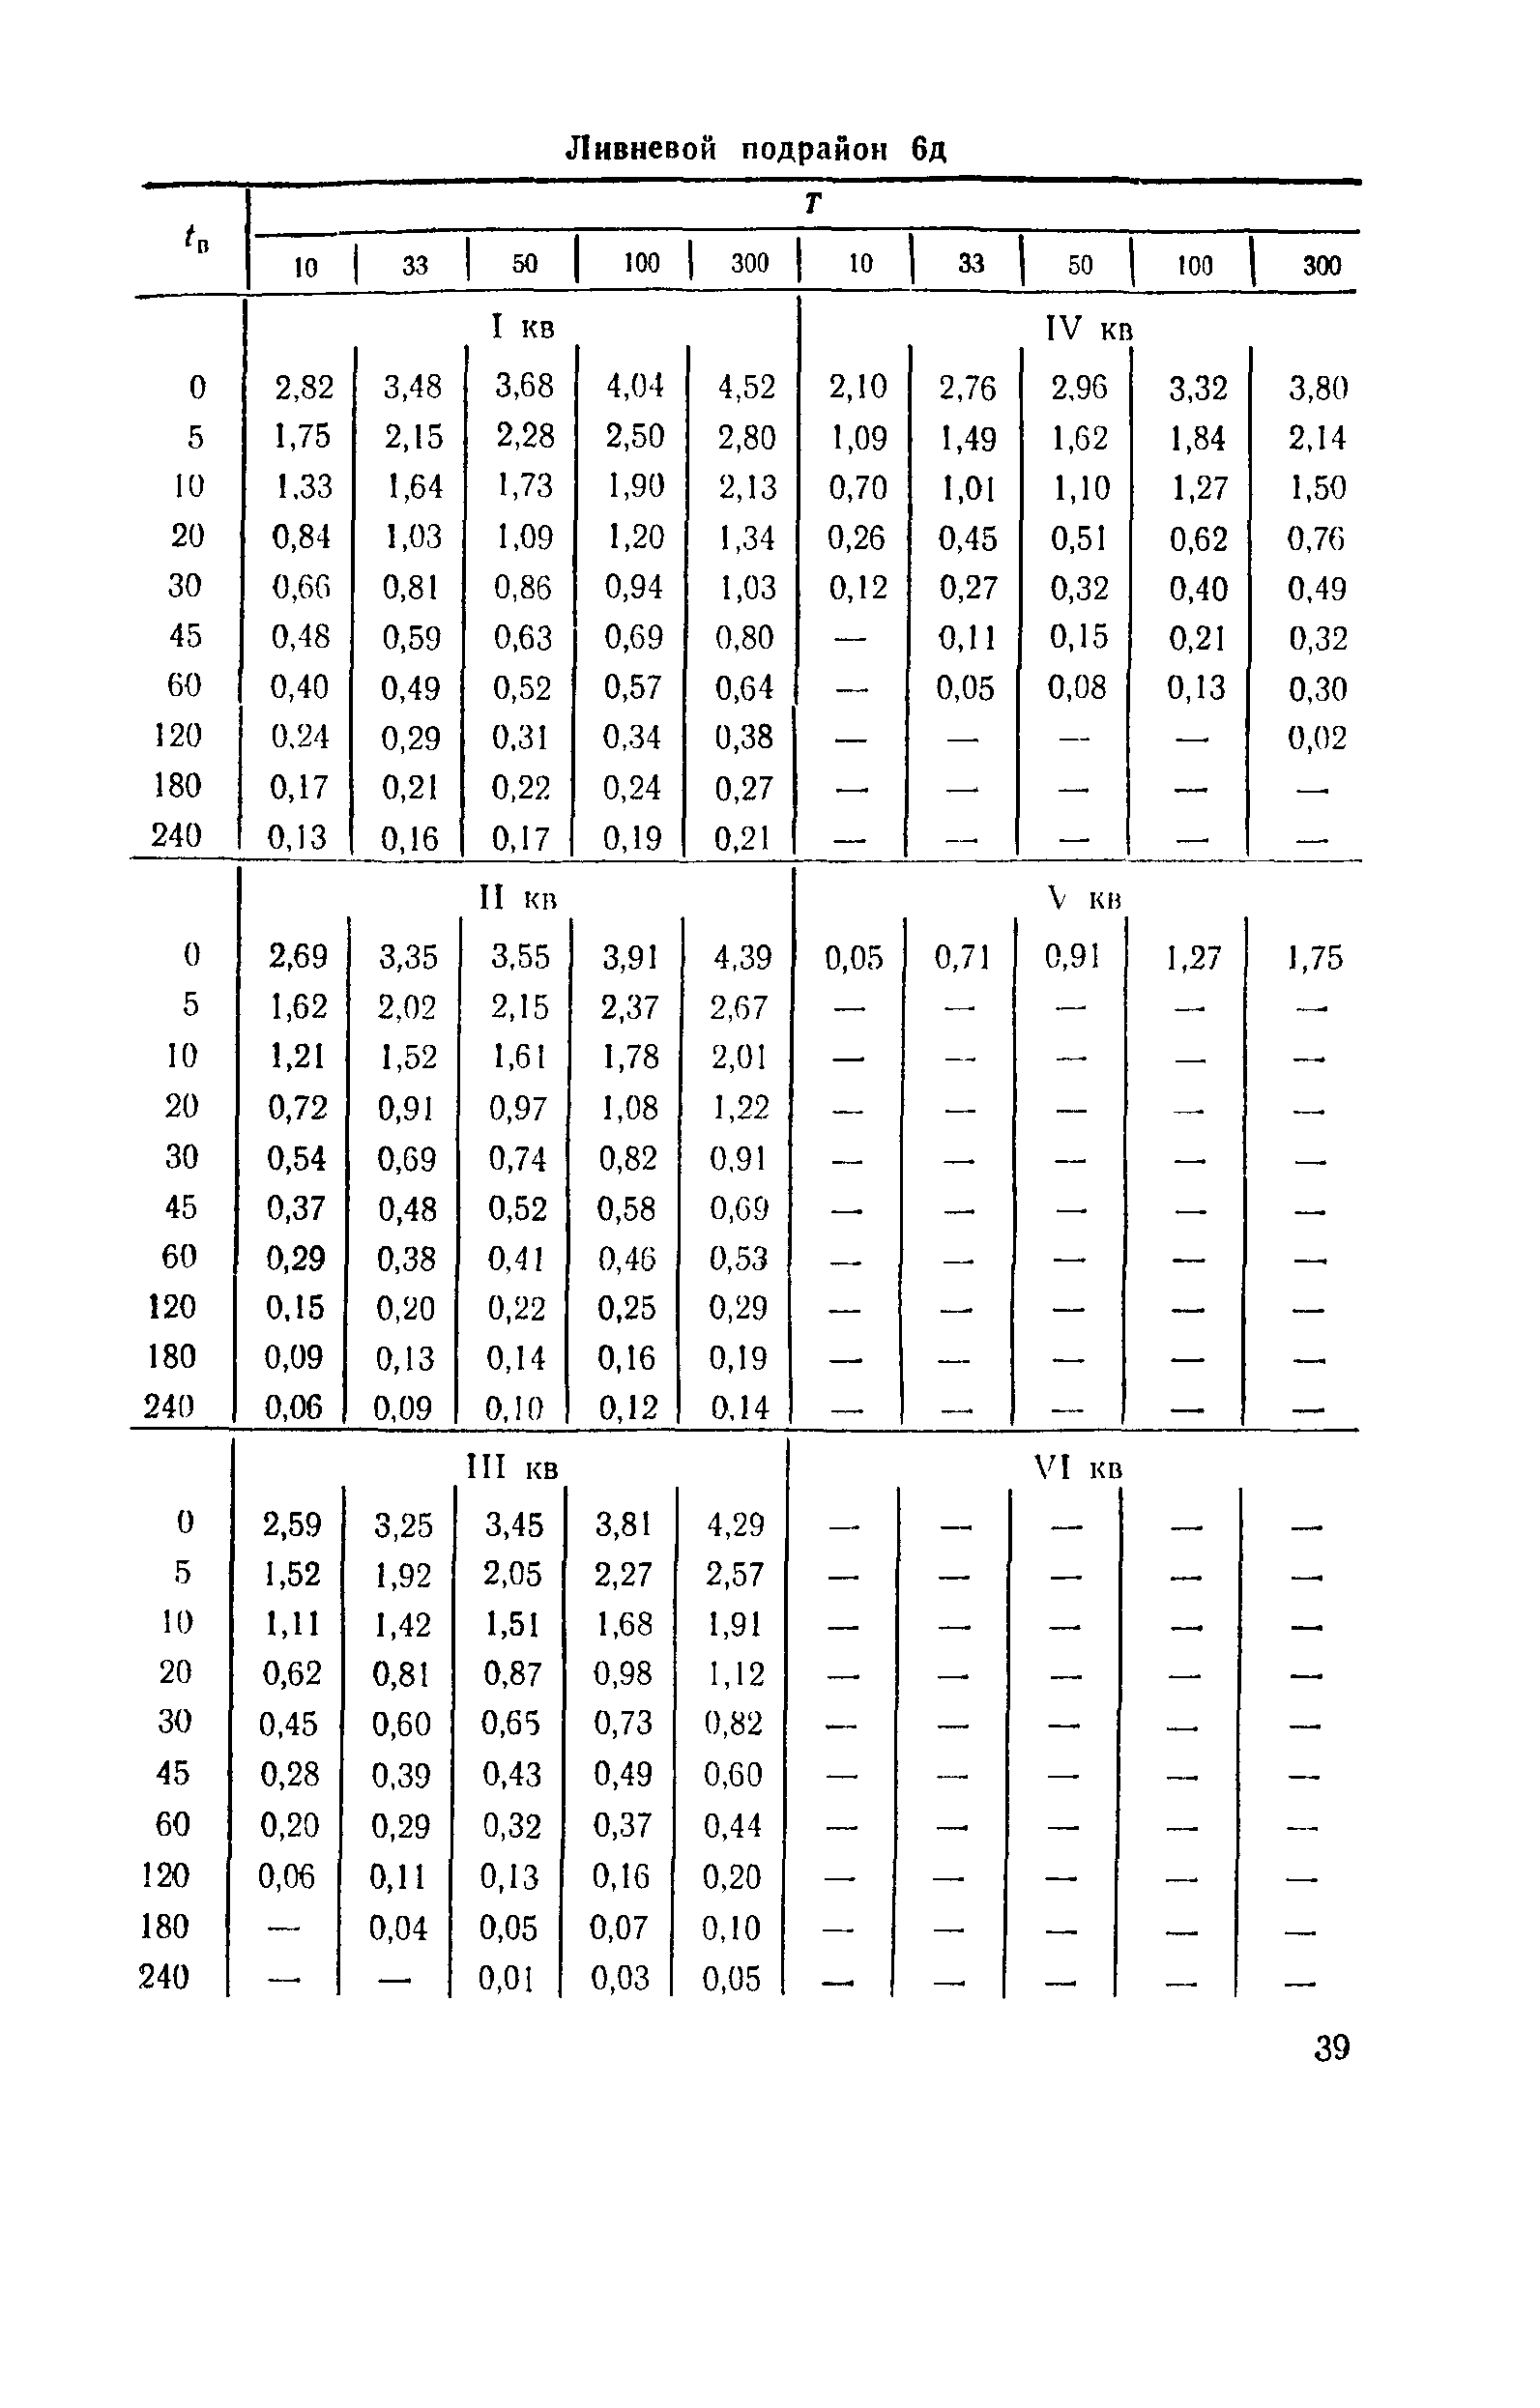 ВСН 63-76